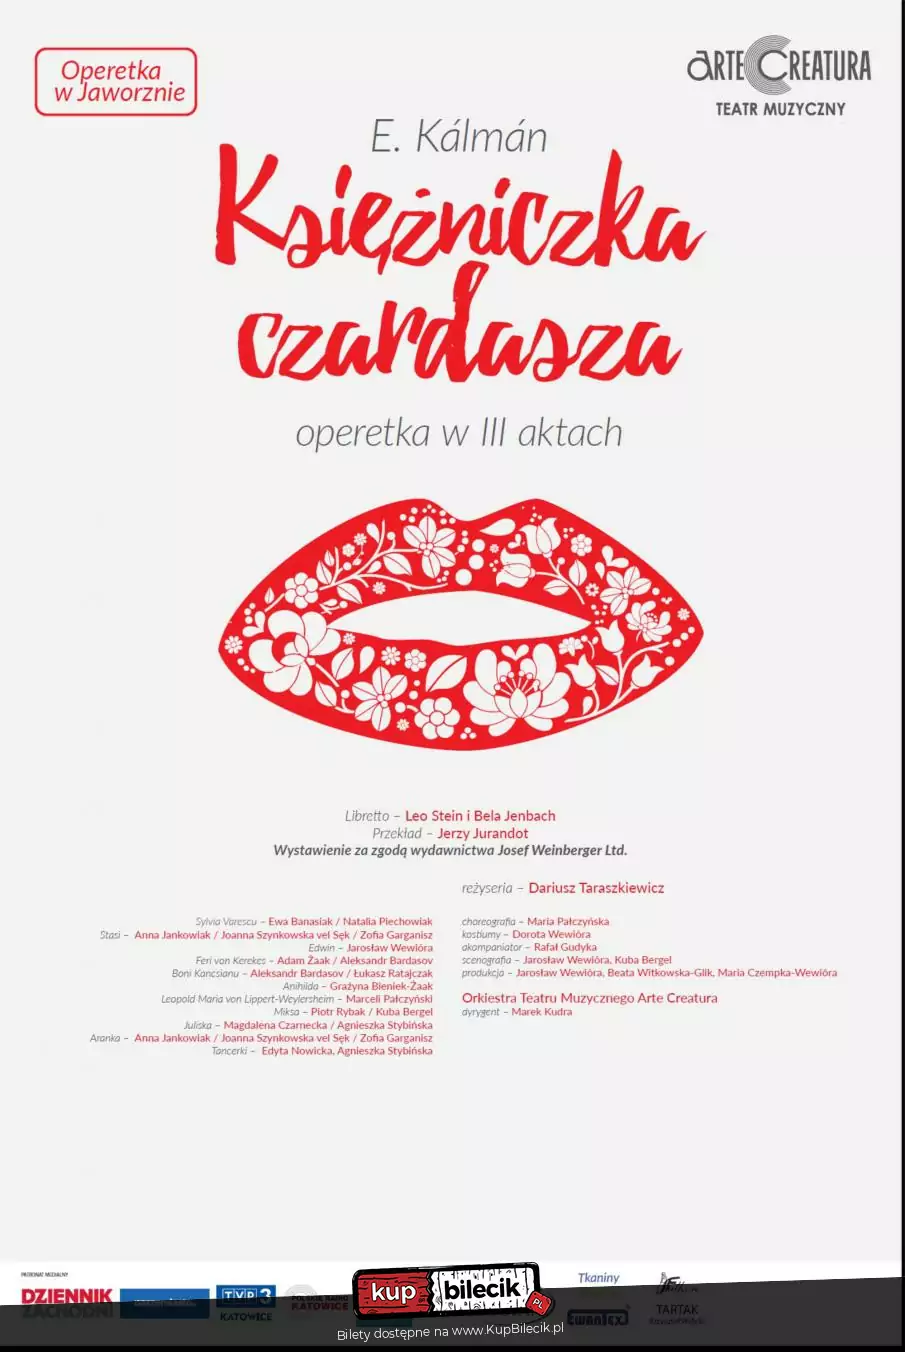 Ksiniczka czardasza I.Kalman operetka - Arte Creatura Teatr Muzyczny